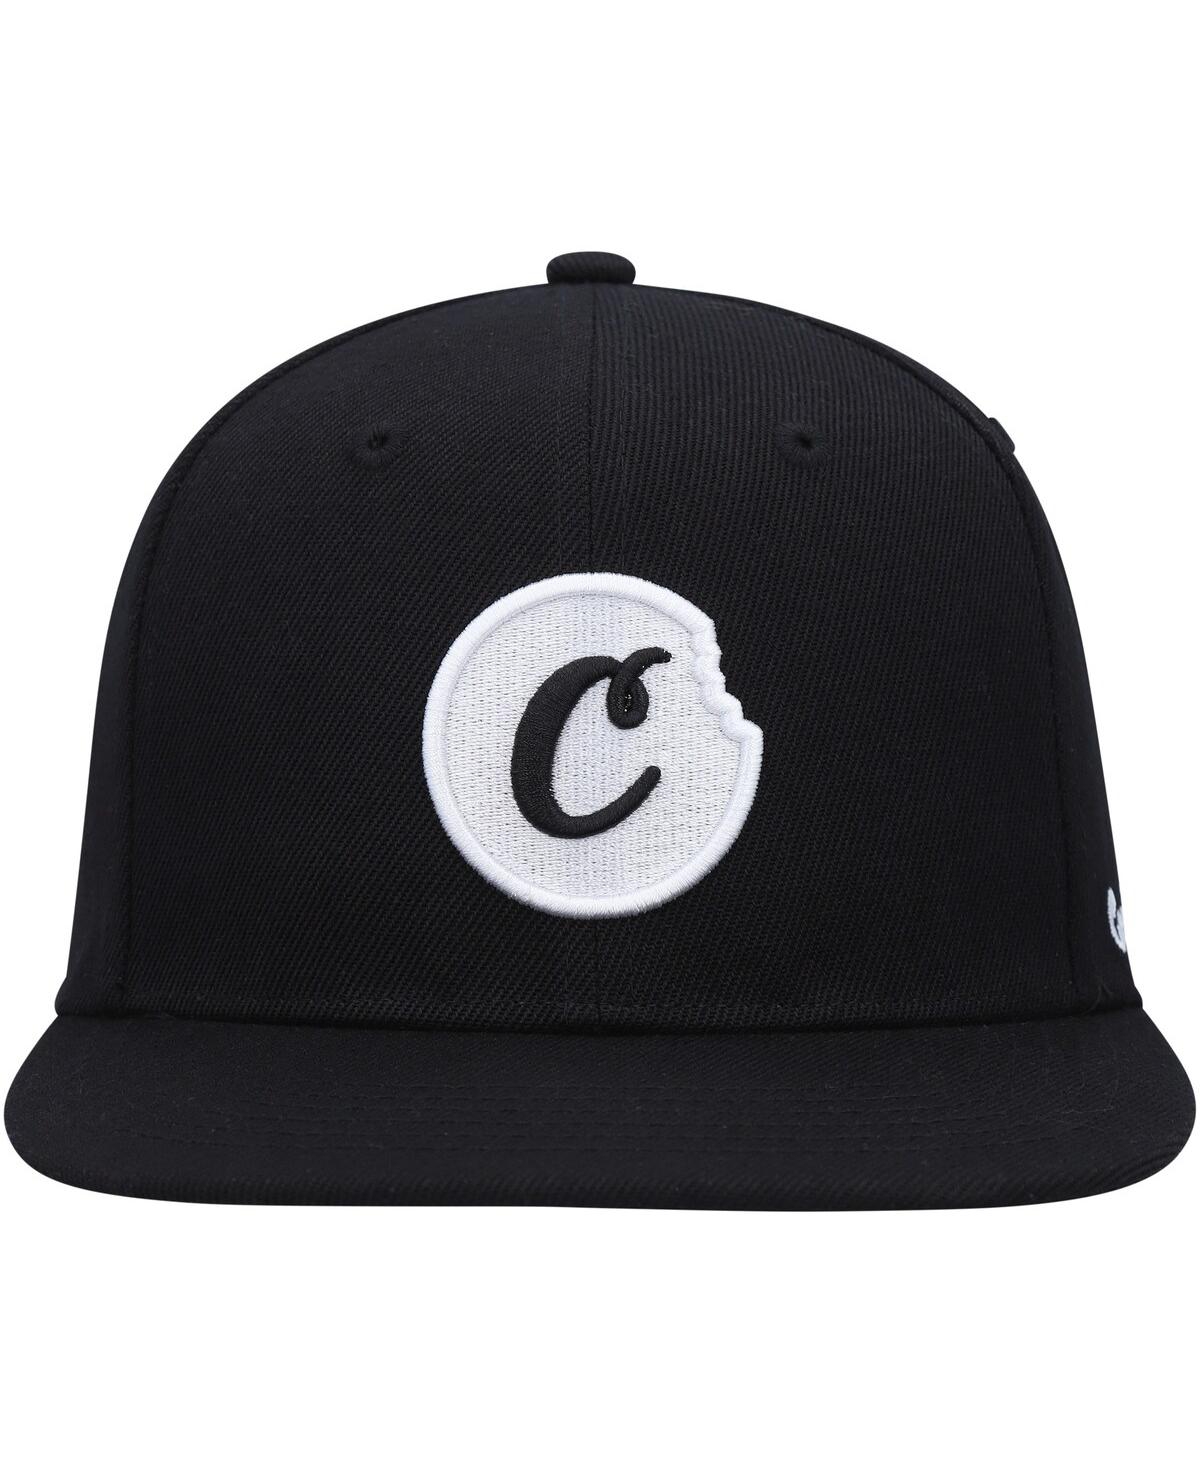 Shop Cookies Men's  Black C-bite Snapback Hat